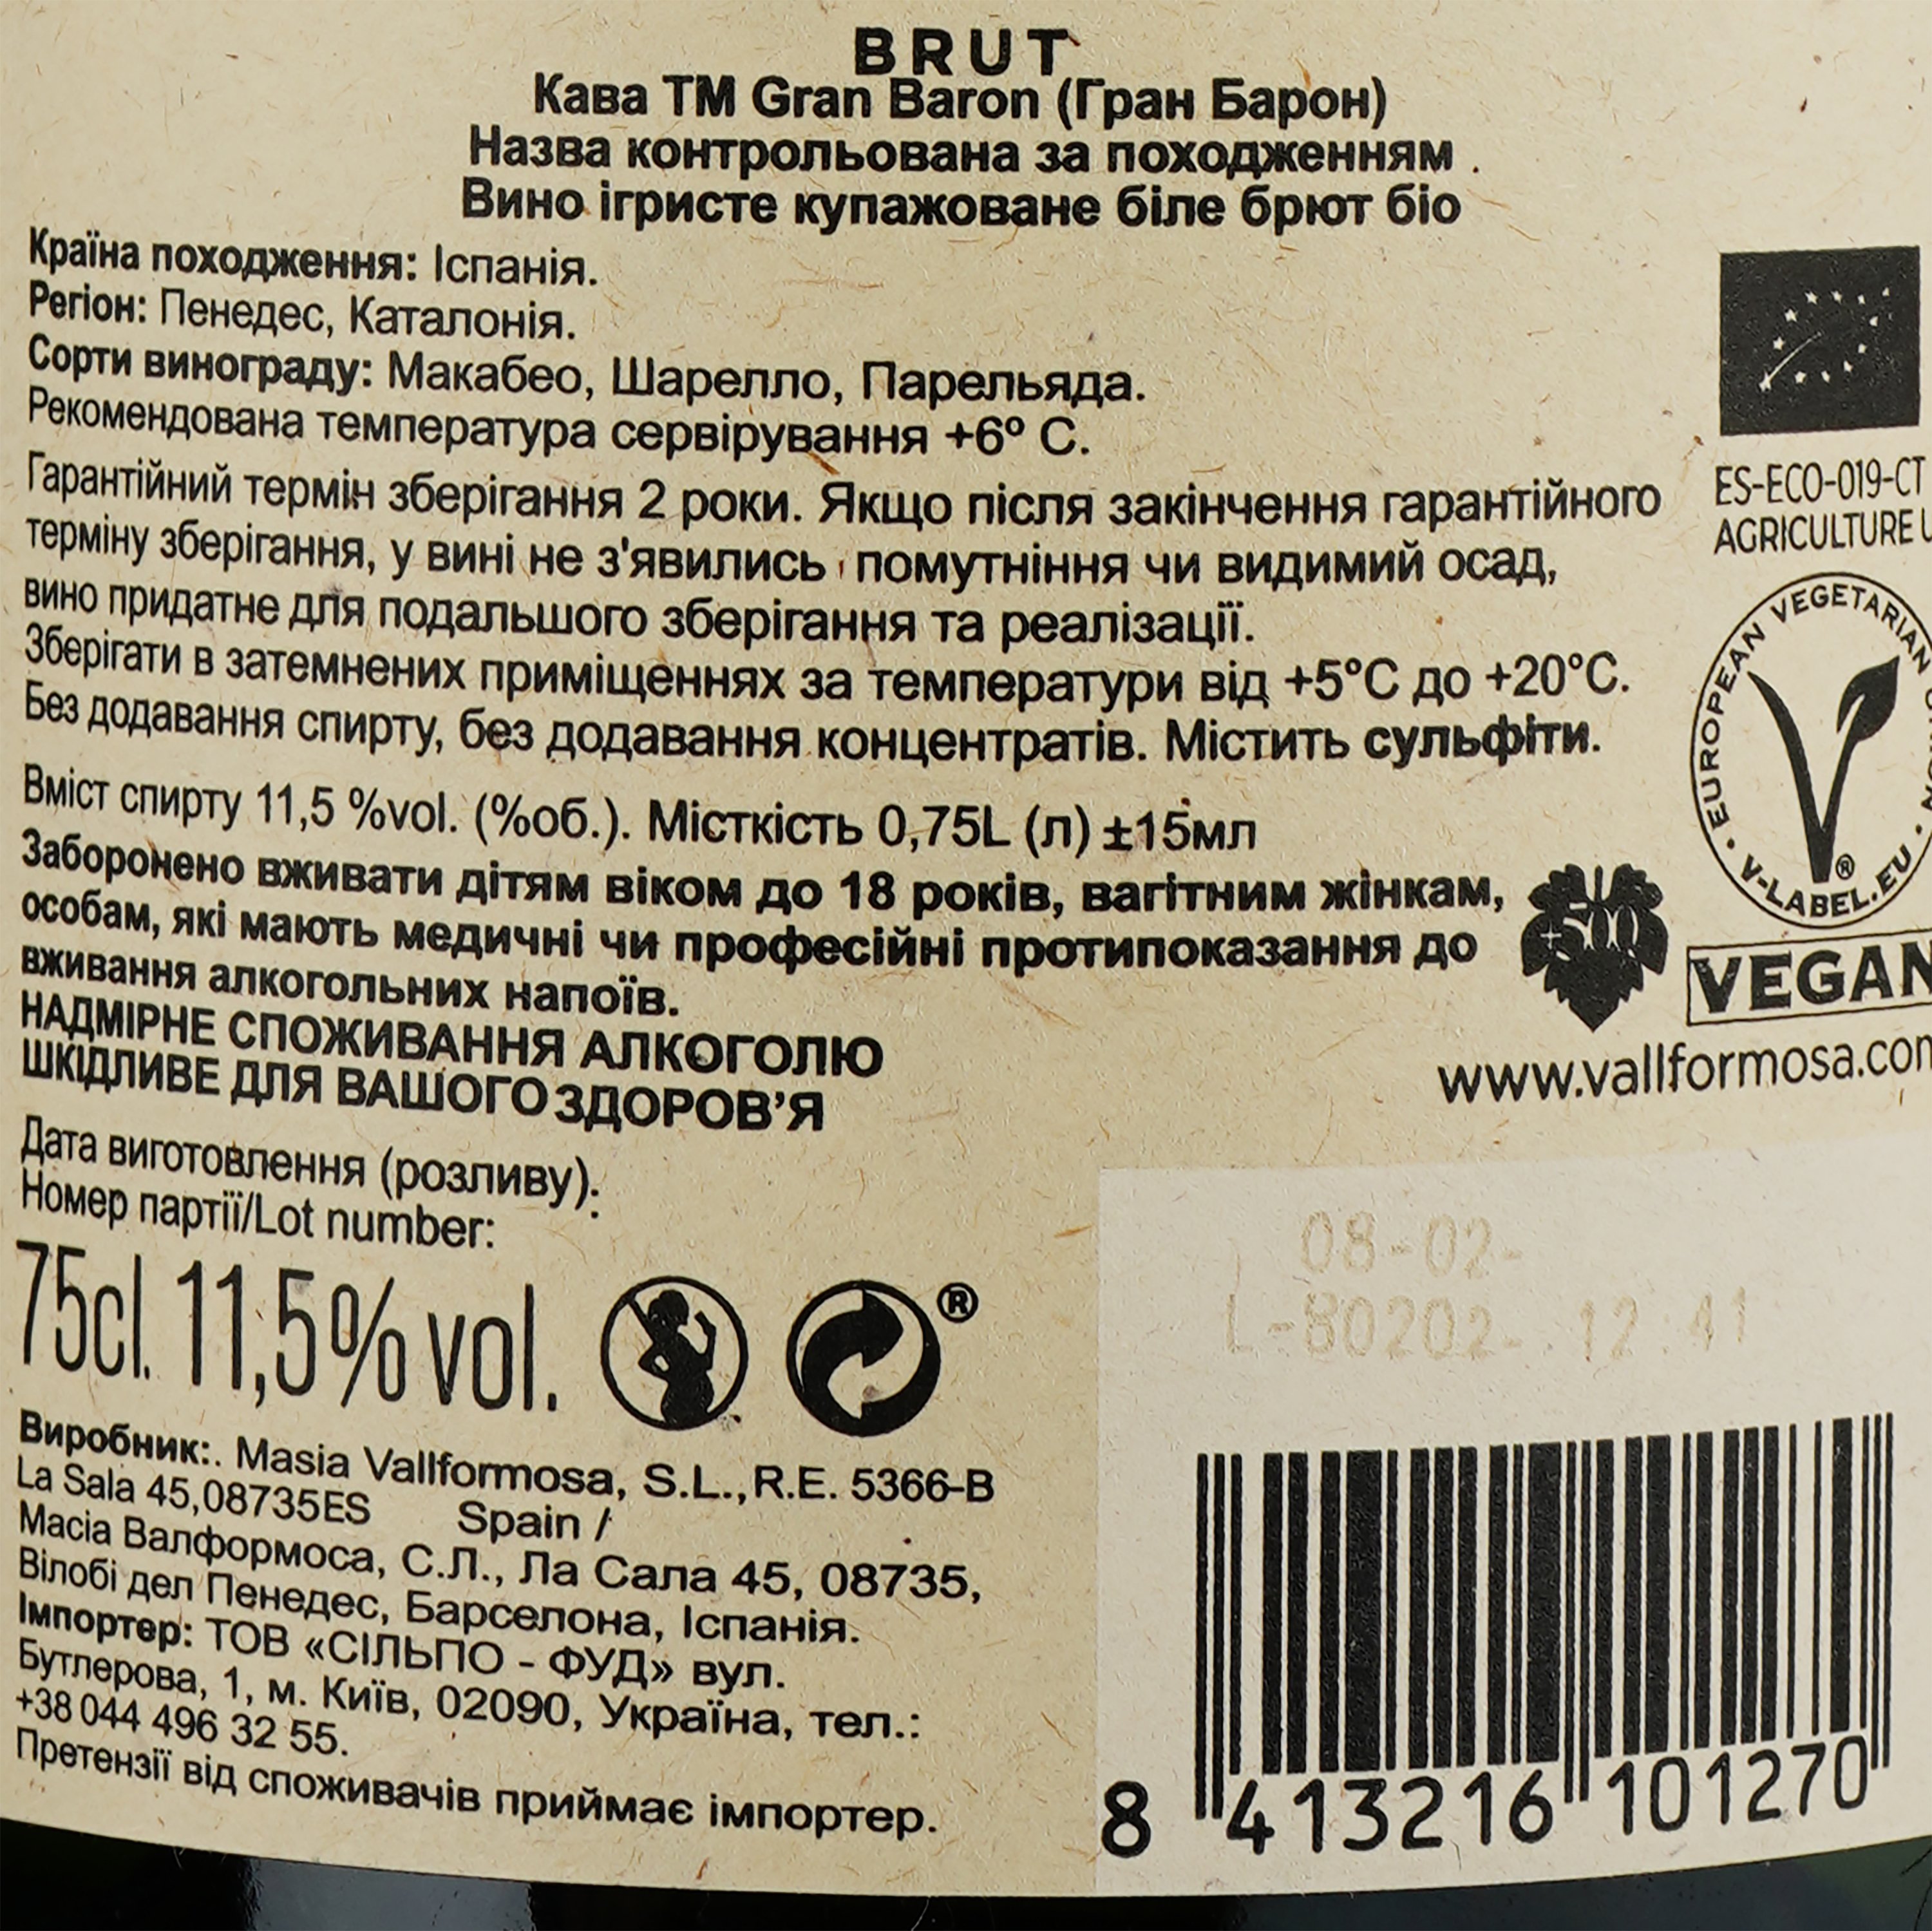 Вино игристое Gran Baron Cava Brut Organic Bio белое брют, 0,75 л, 11,5% (814910) - фото 3